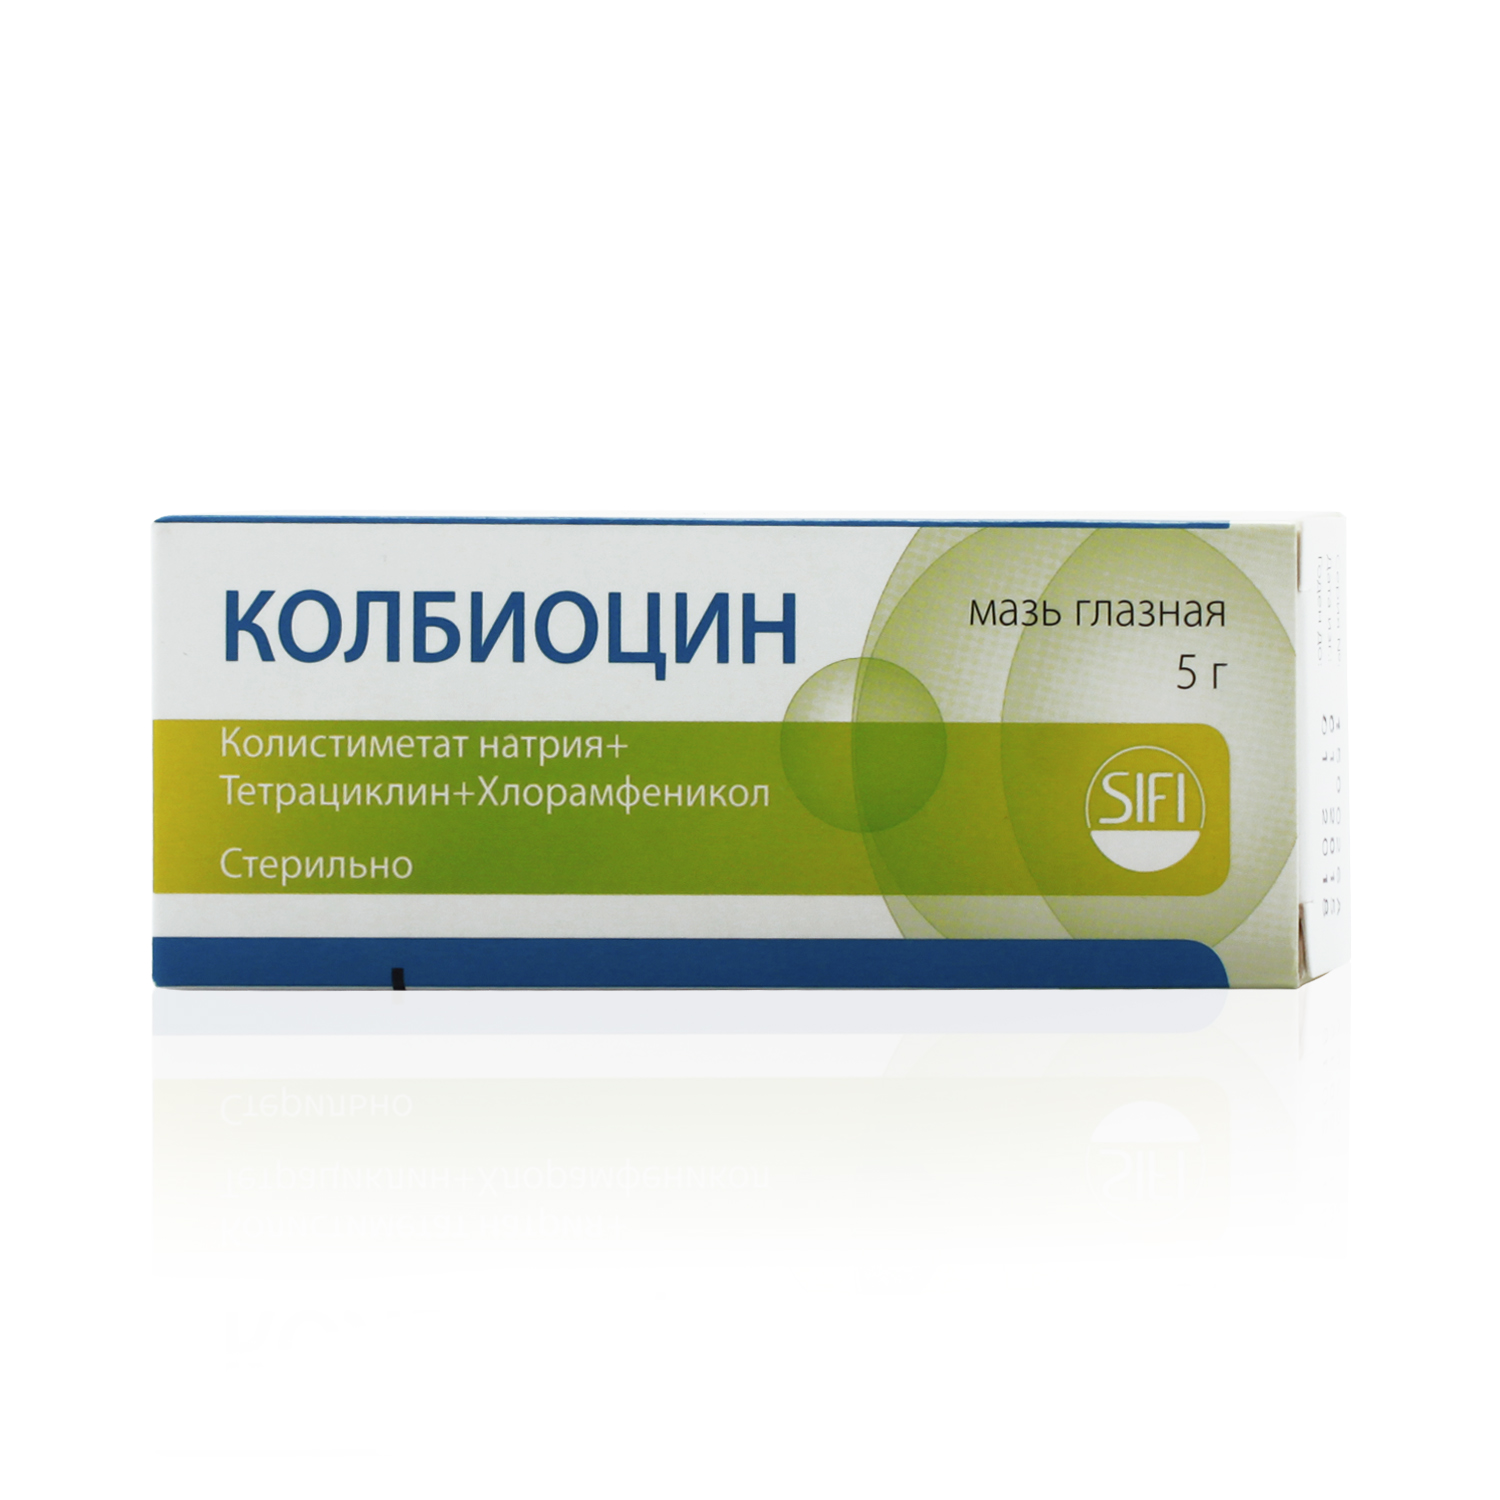 Колбиоцин Мазь глазная 5 г  по цене 430,0 руб в интернет-аптеке в .